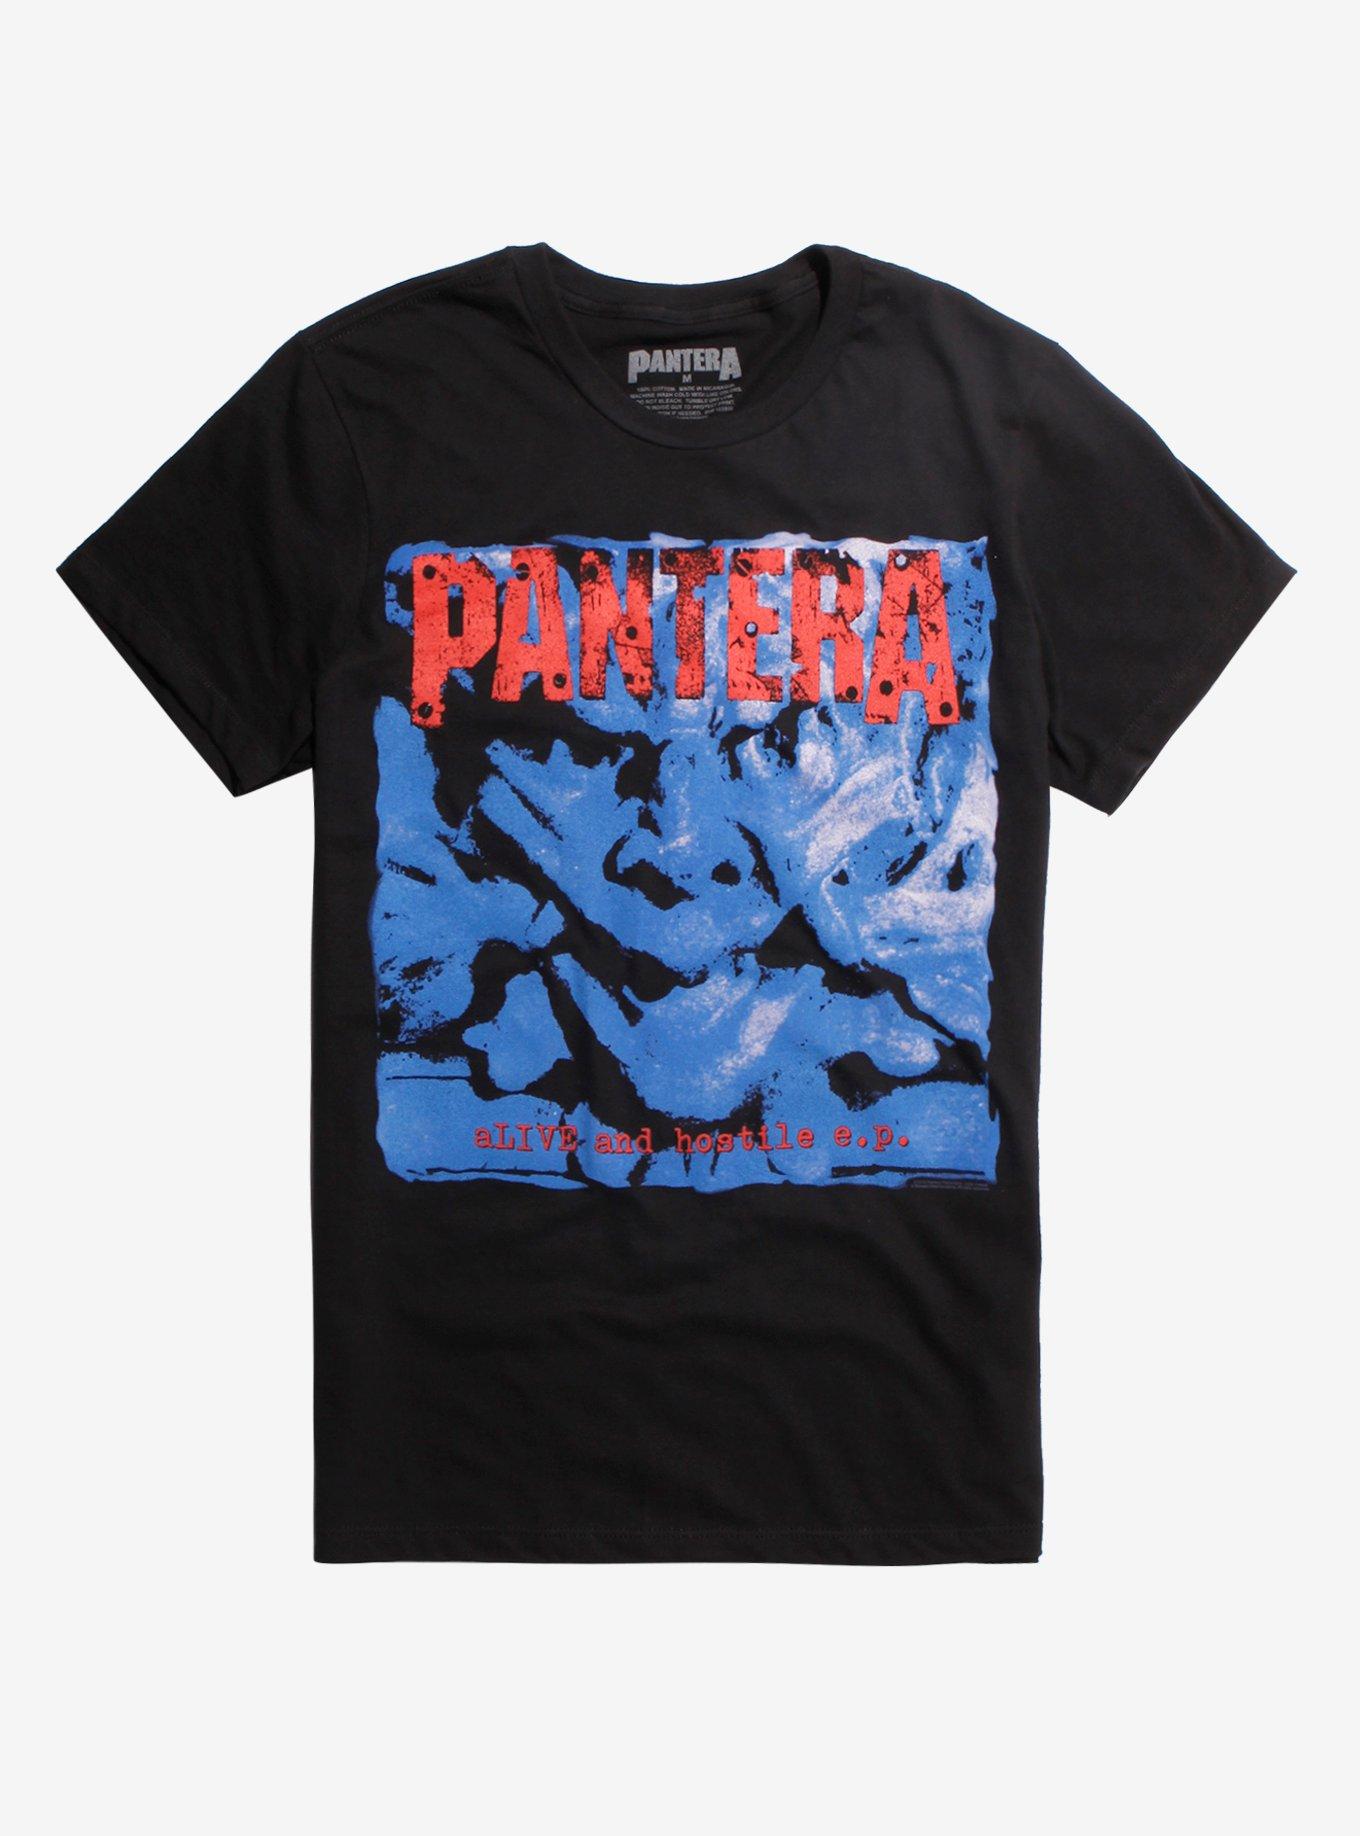 Pantera Alive And Hostile T-Shirt, BLACK, hi-res